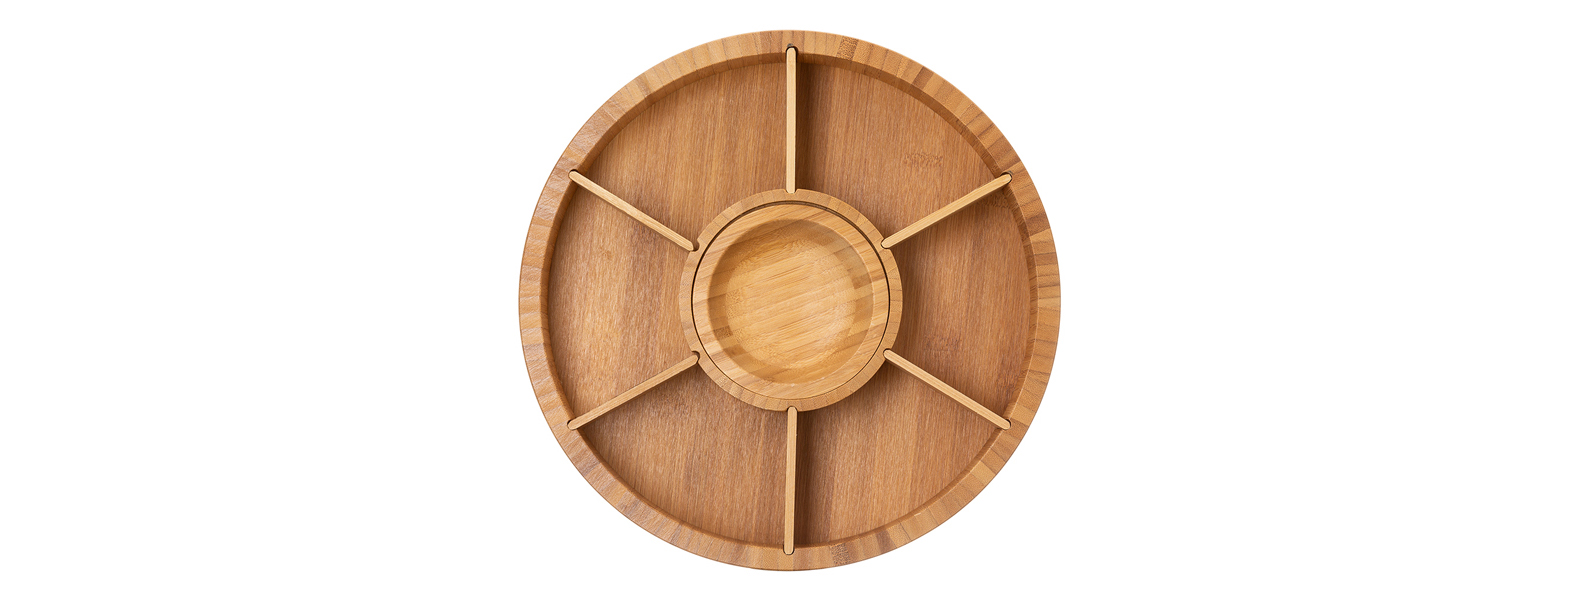 Petisqueira giratória em Bambu. Conta com seis divisórias, com placas removíveis, e um bowl para molhos e patês.